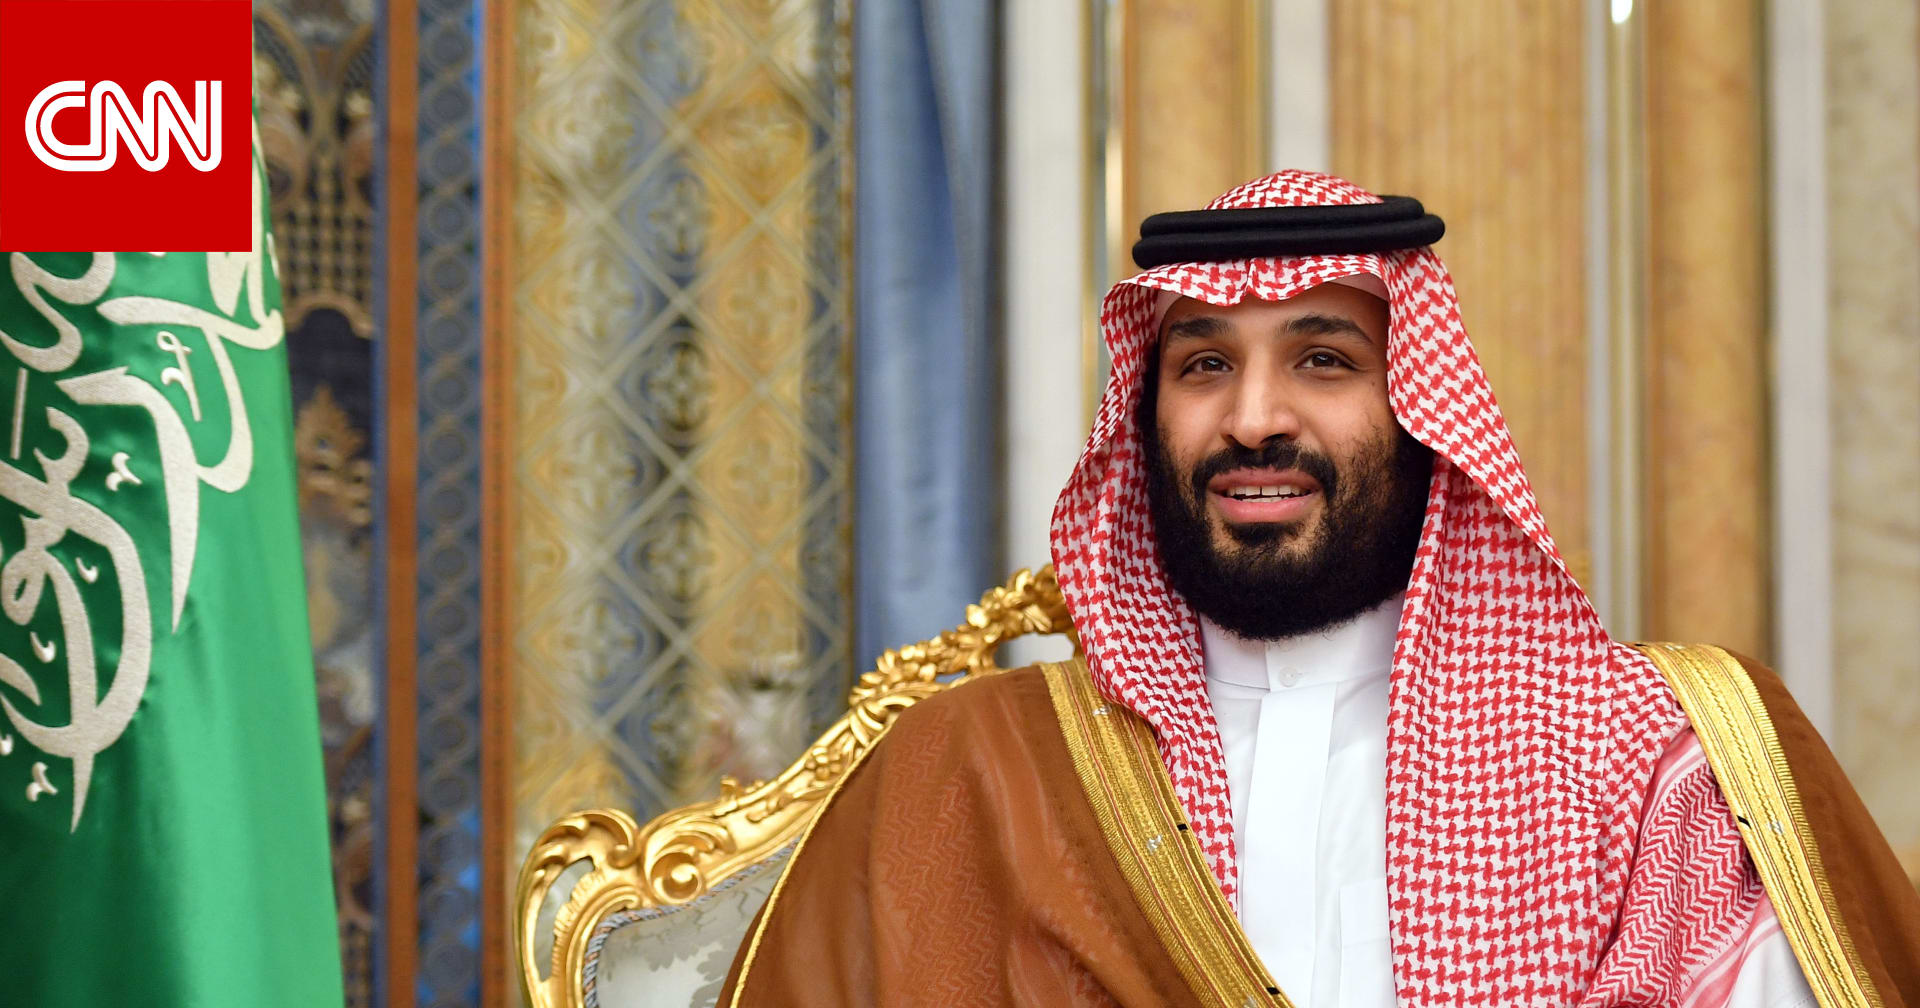 محمد بن سلمان عن مقتل خاشقجي: أتحمل المسؤولية الكاملة كقائد في السعودية - CNN Arabic